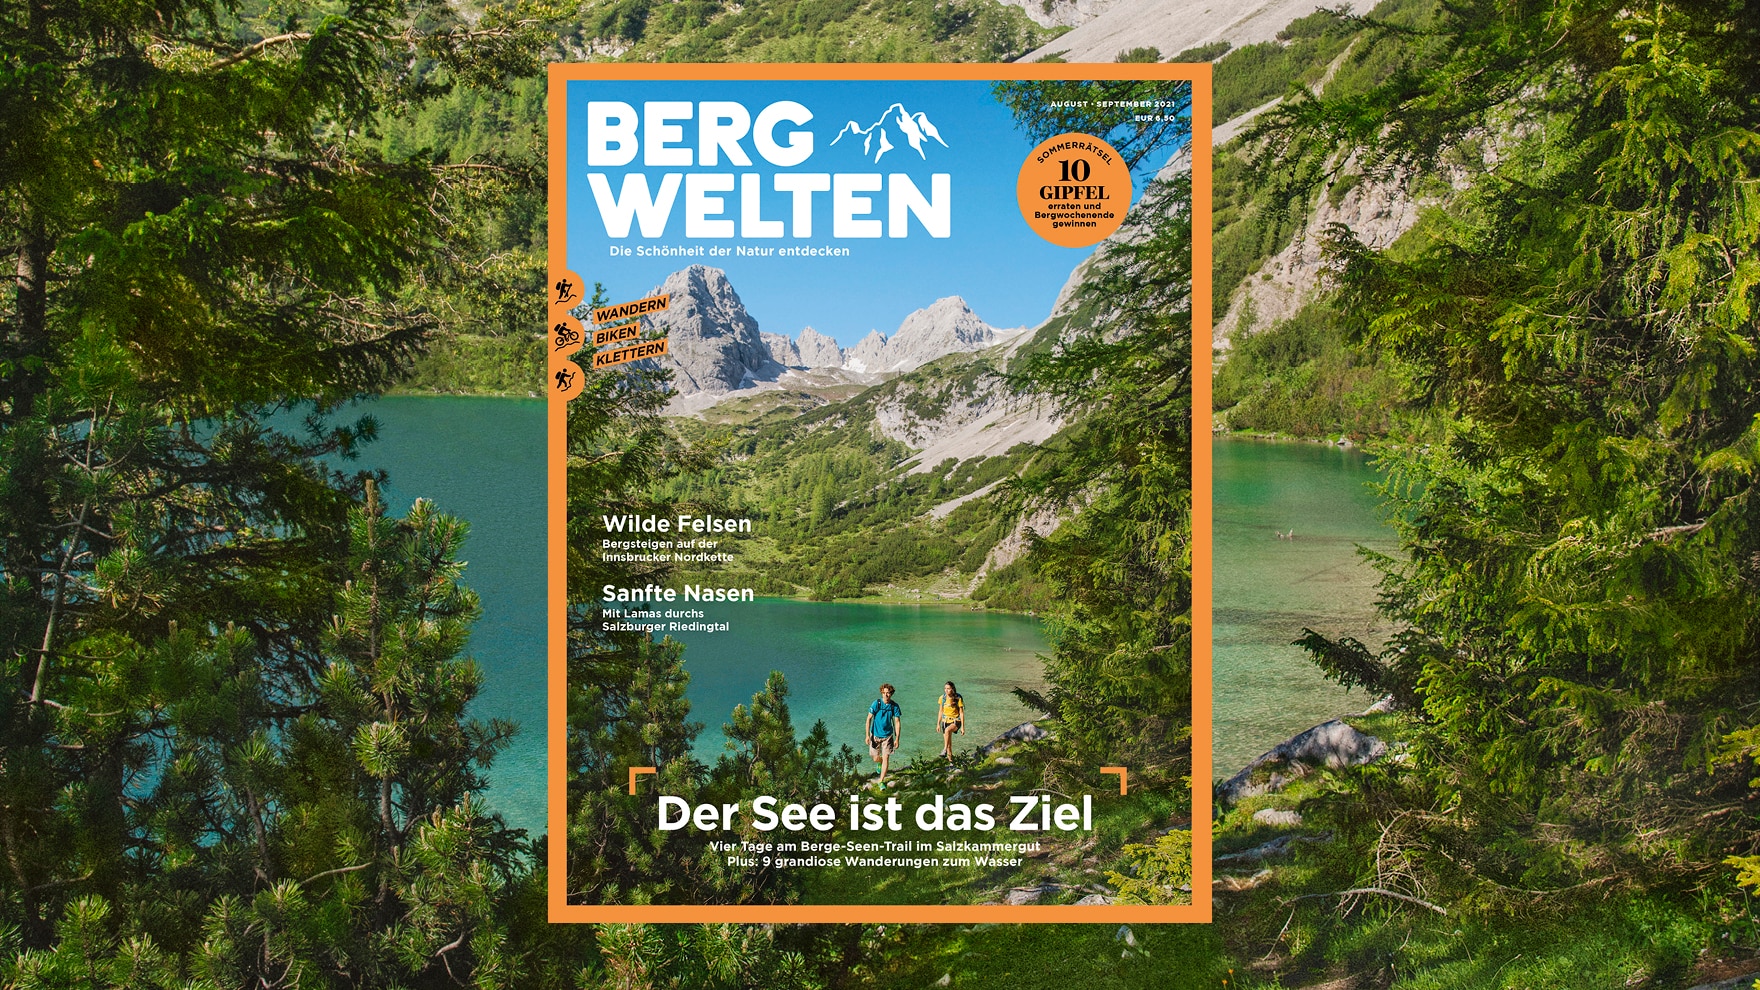 Das neue Bergwelten Magazin ist da!